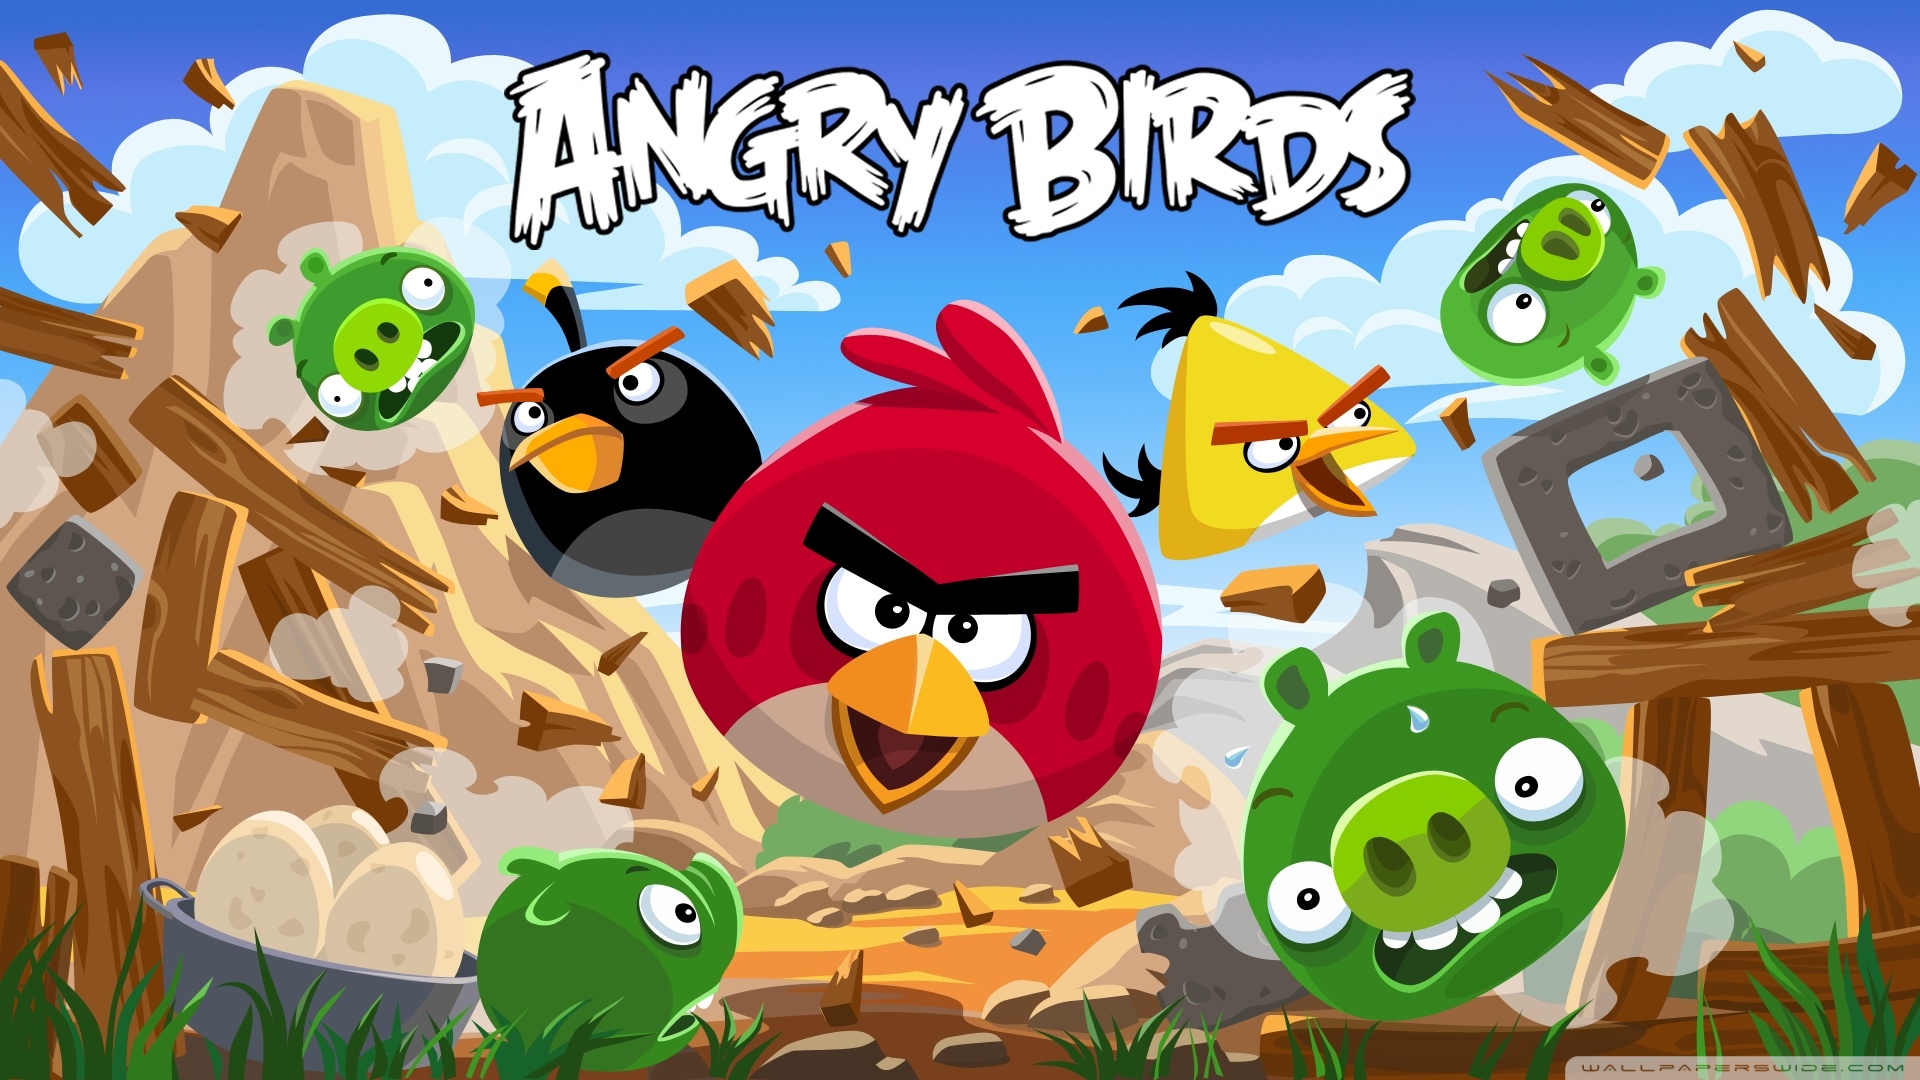 Angry Birds New Version HD desktop wallpaper Widescreen High resolution